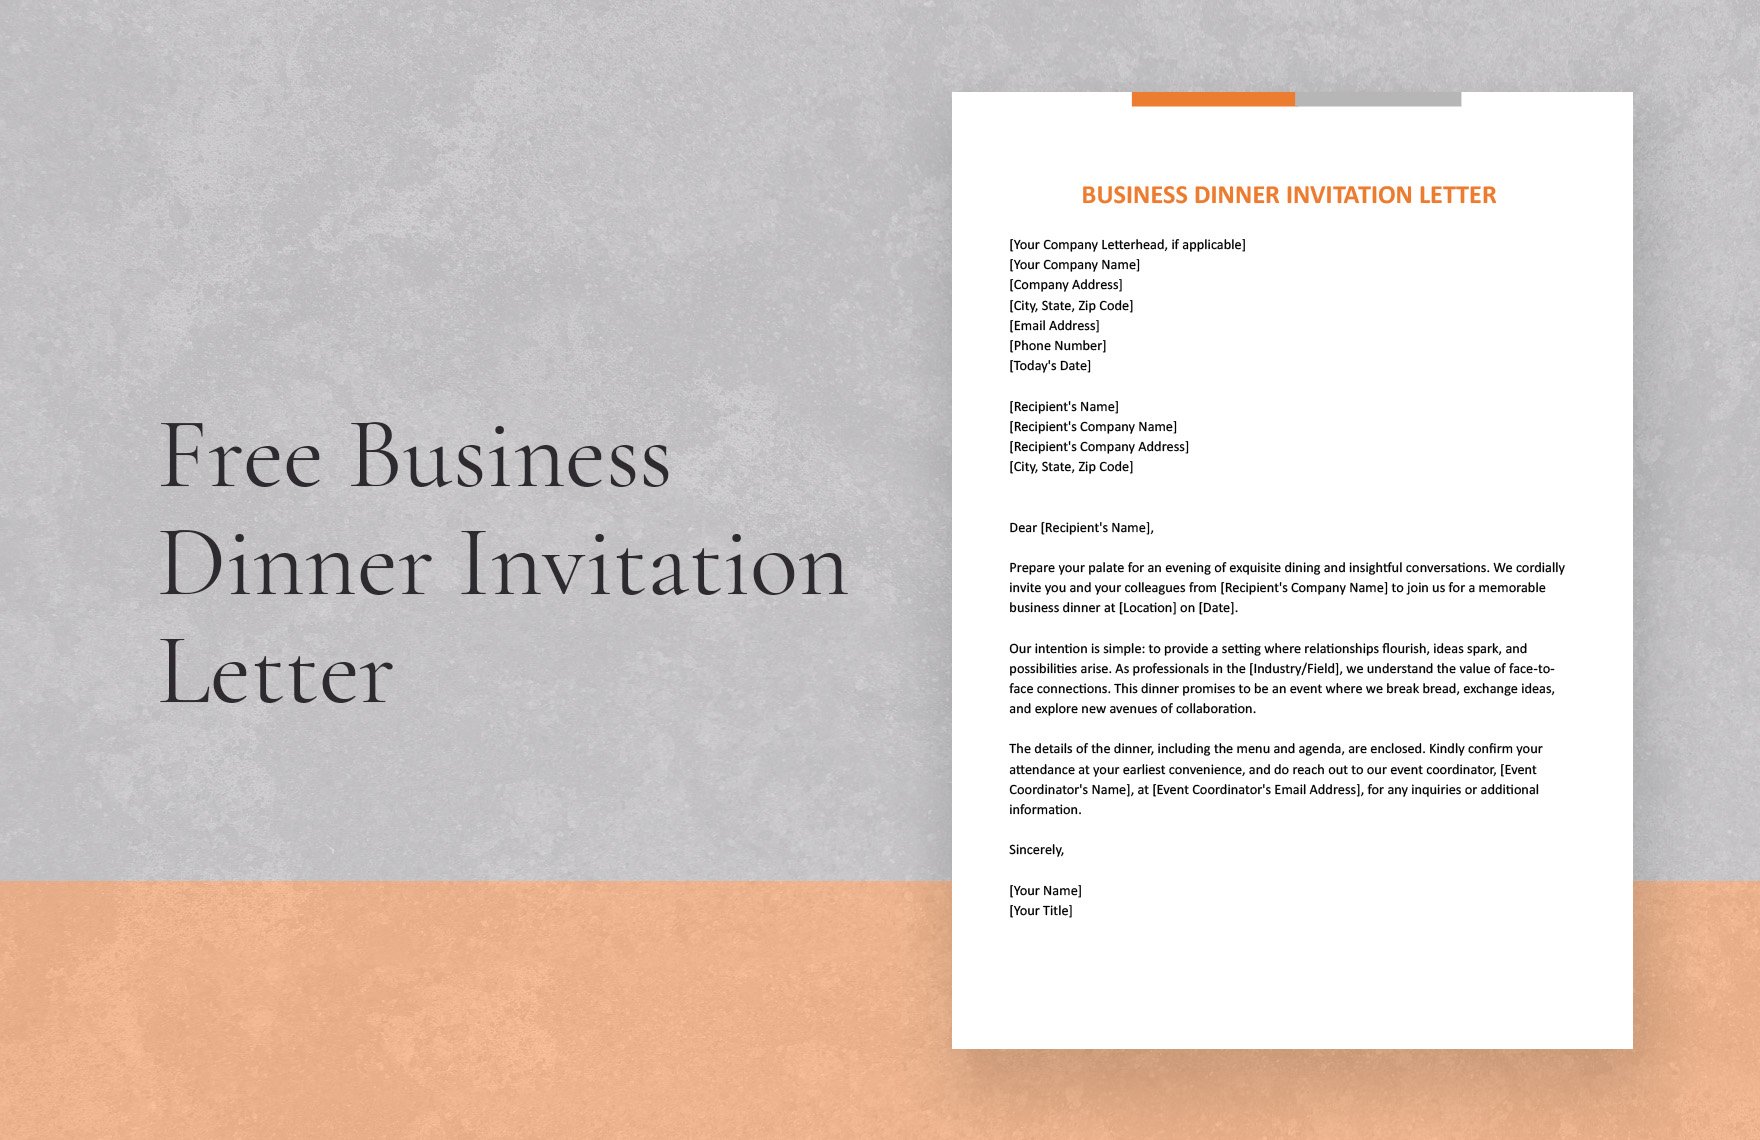 Free Business Dinner Invitation Letter